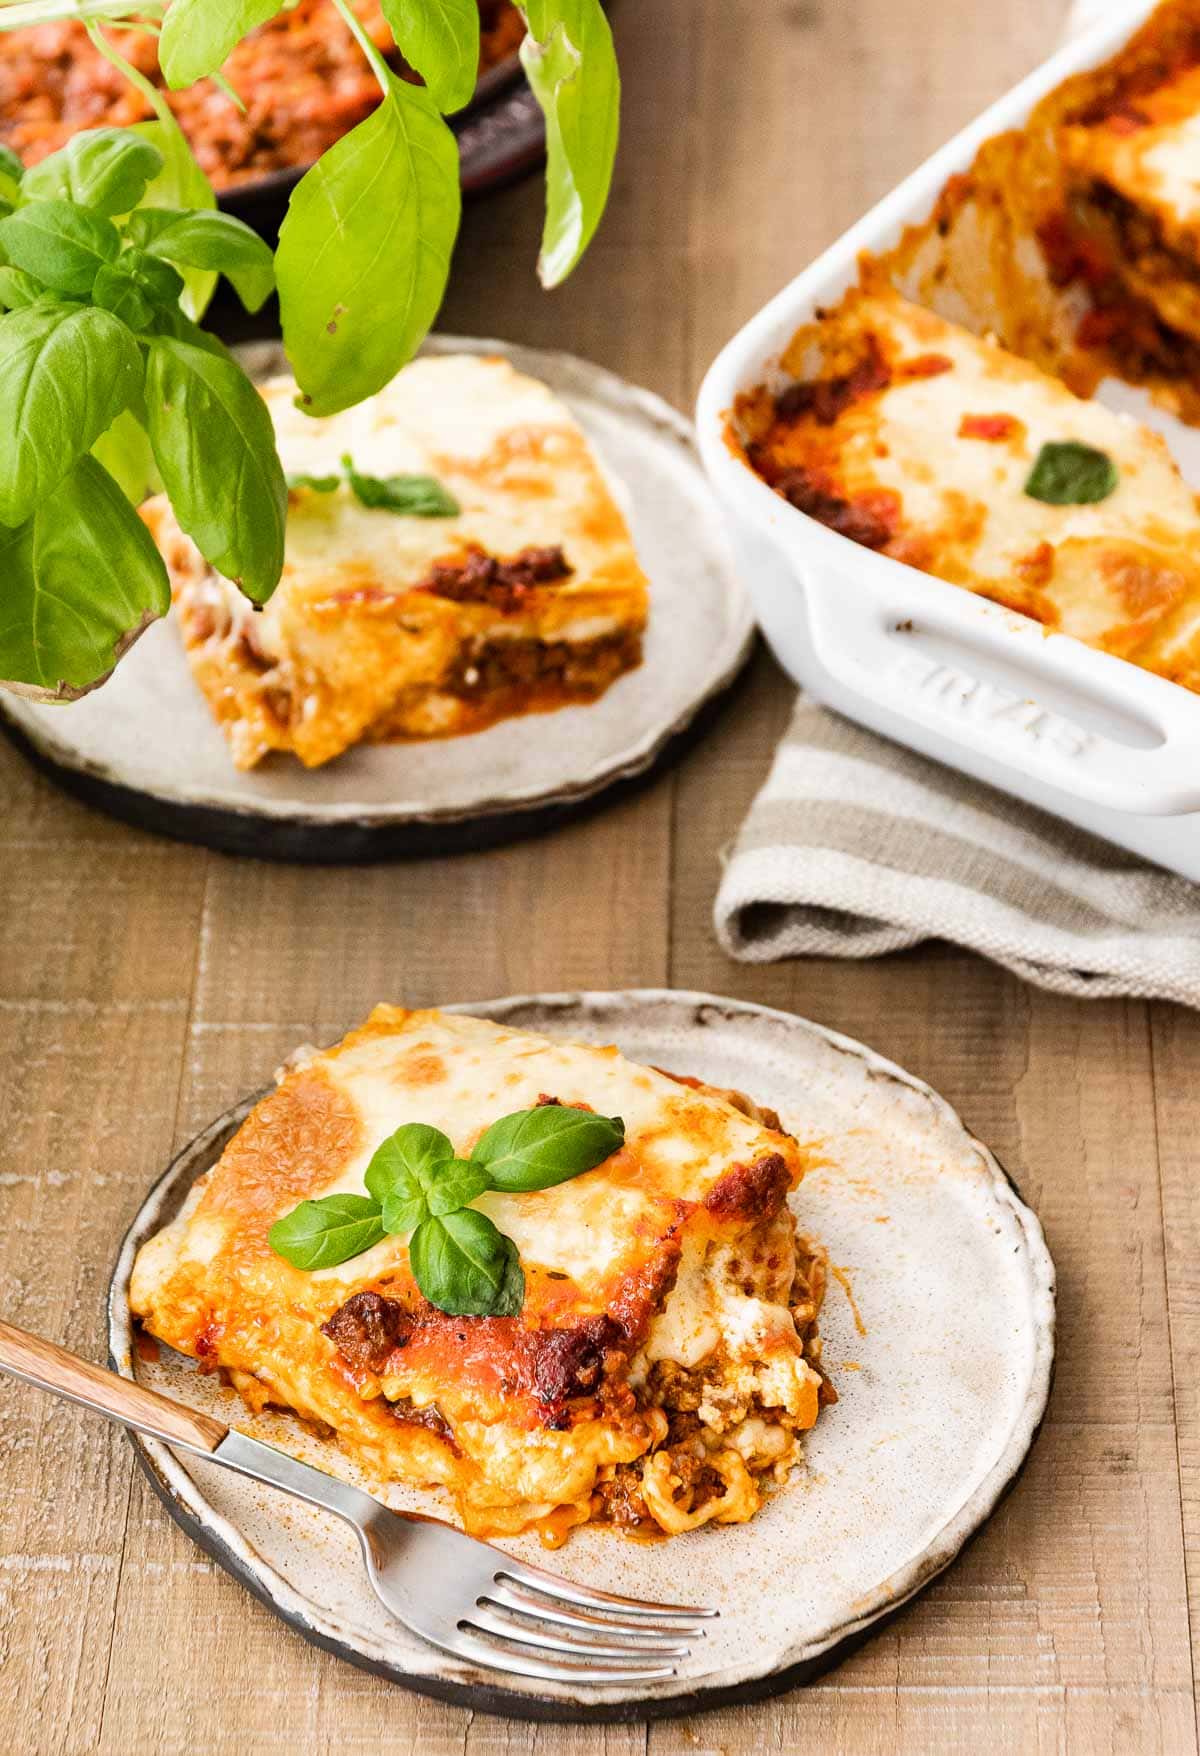 Ravioli Lasagna Bake on plate